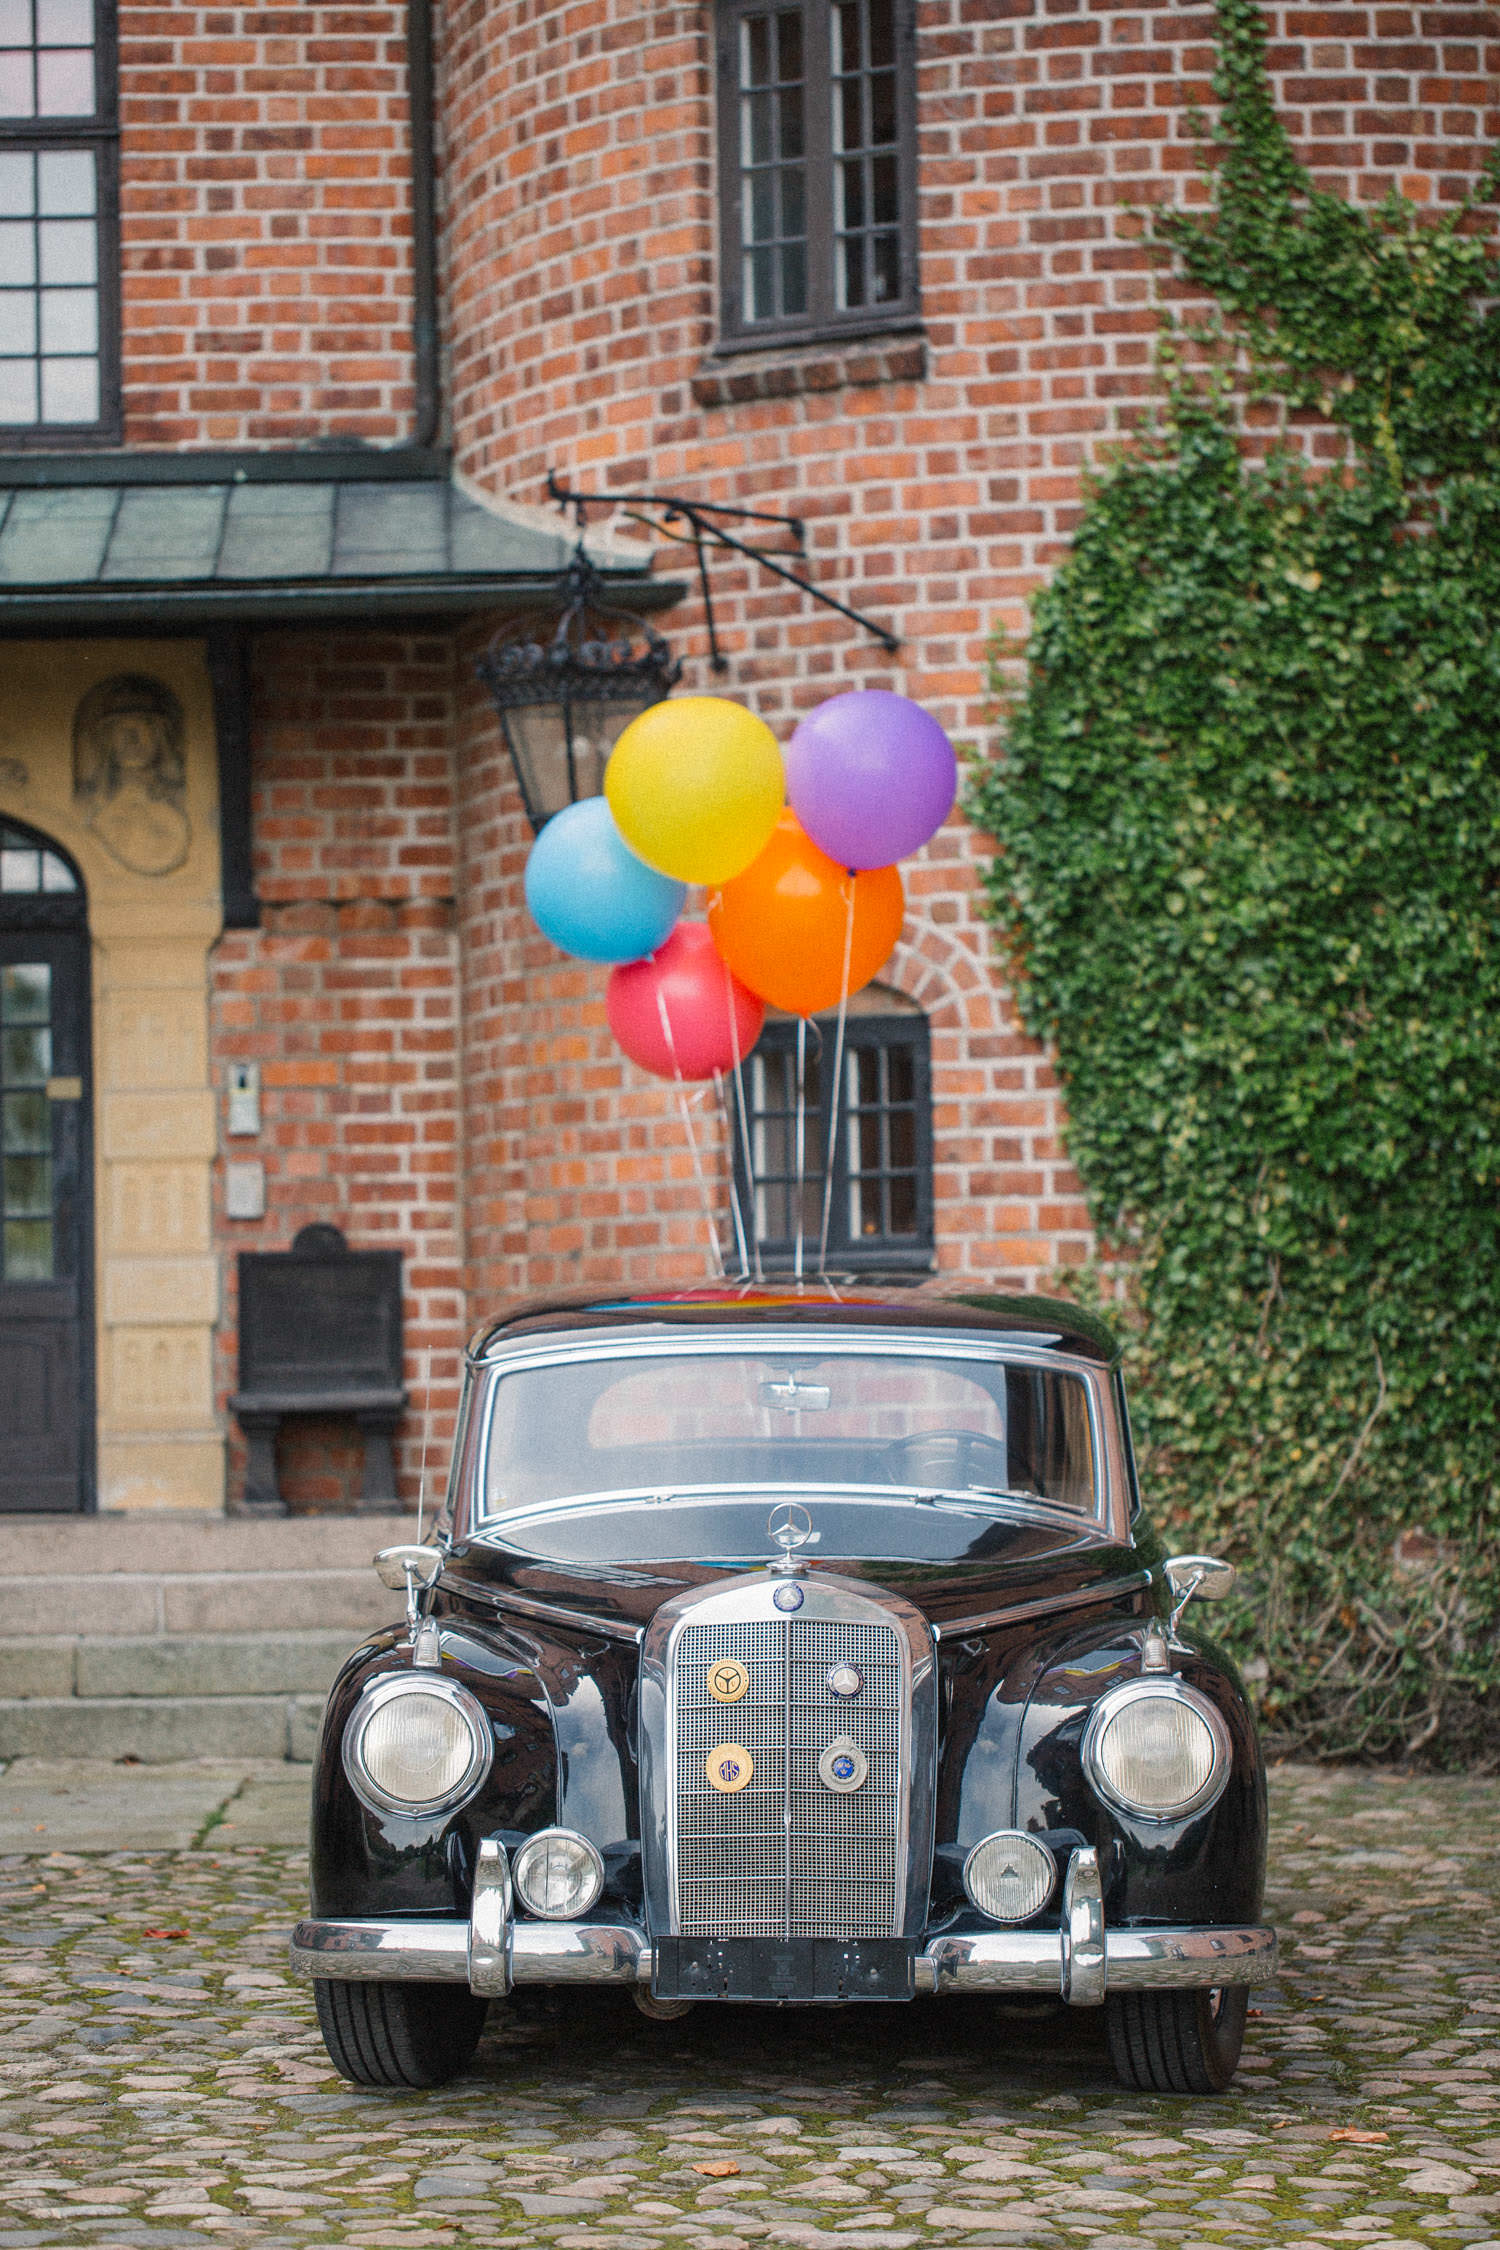 Bil med heliumballonger på Trolleholms slott, Skåne.